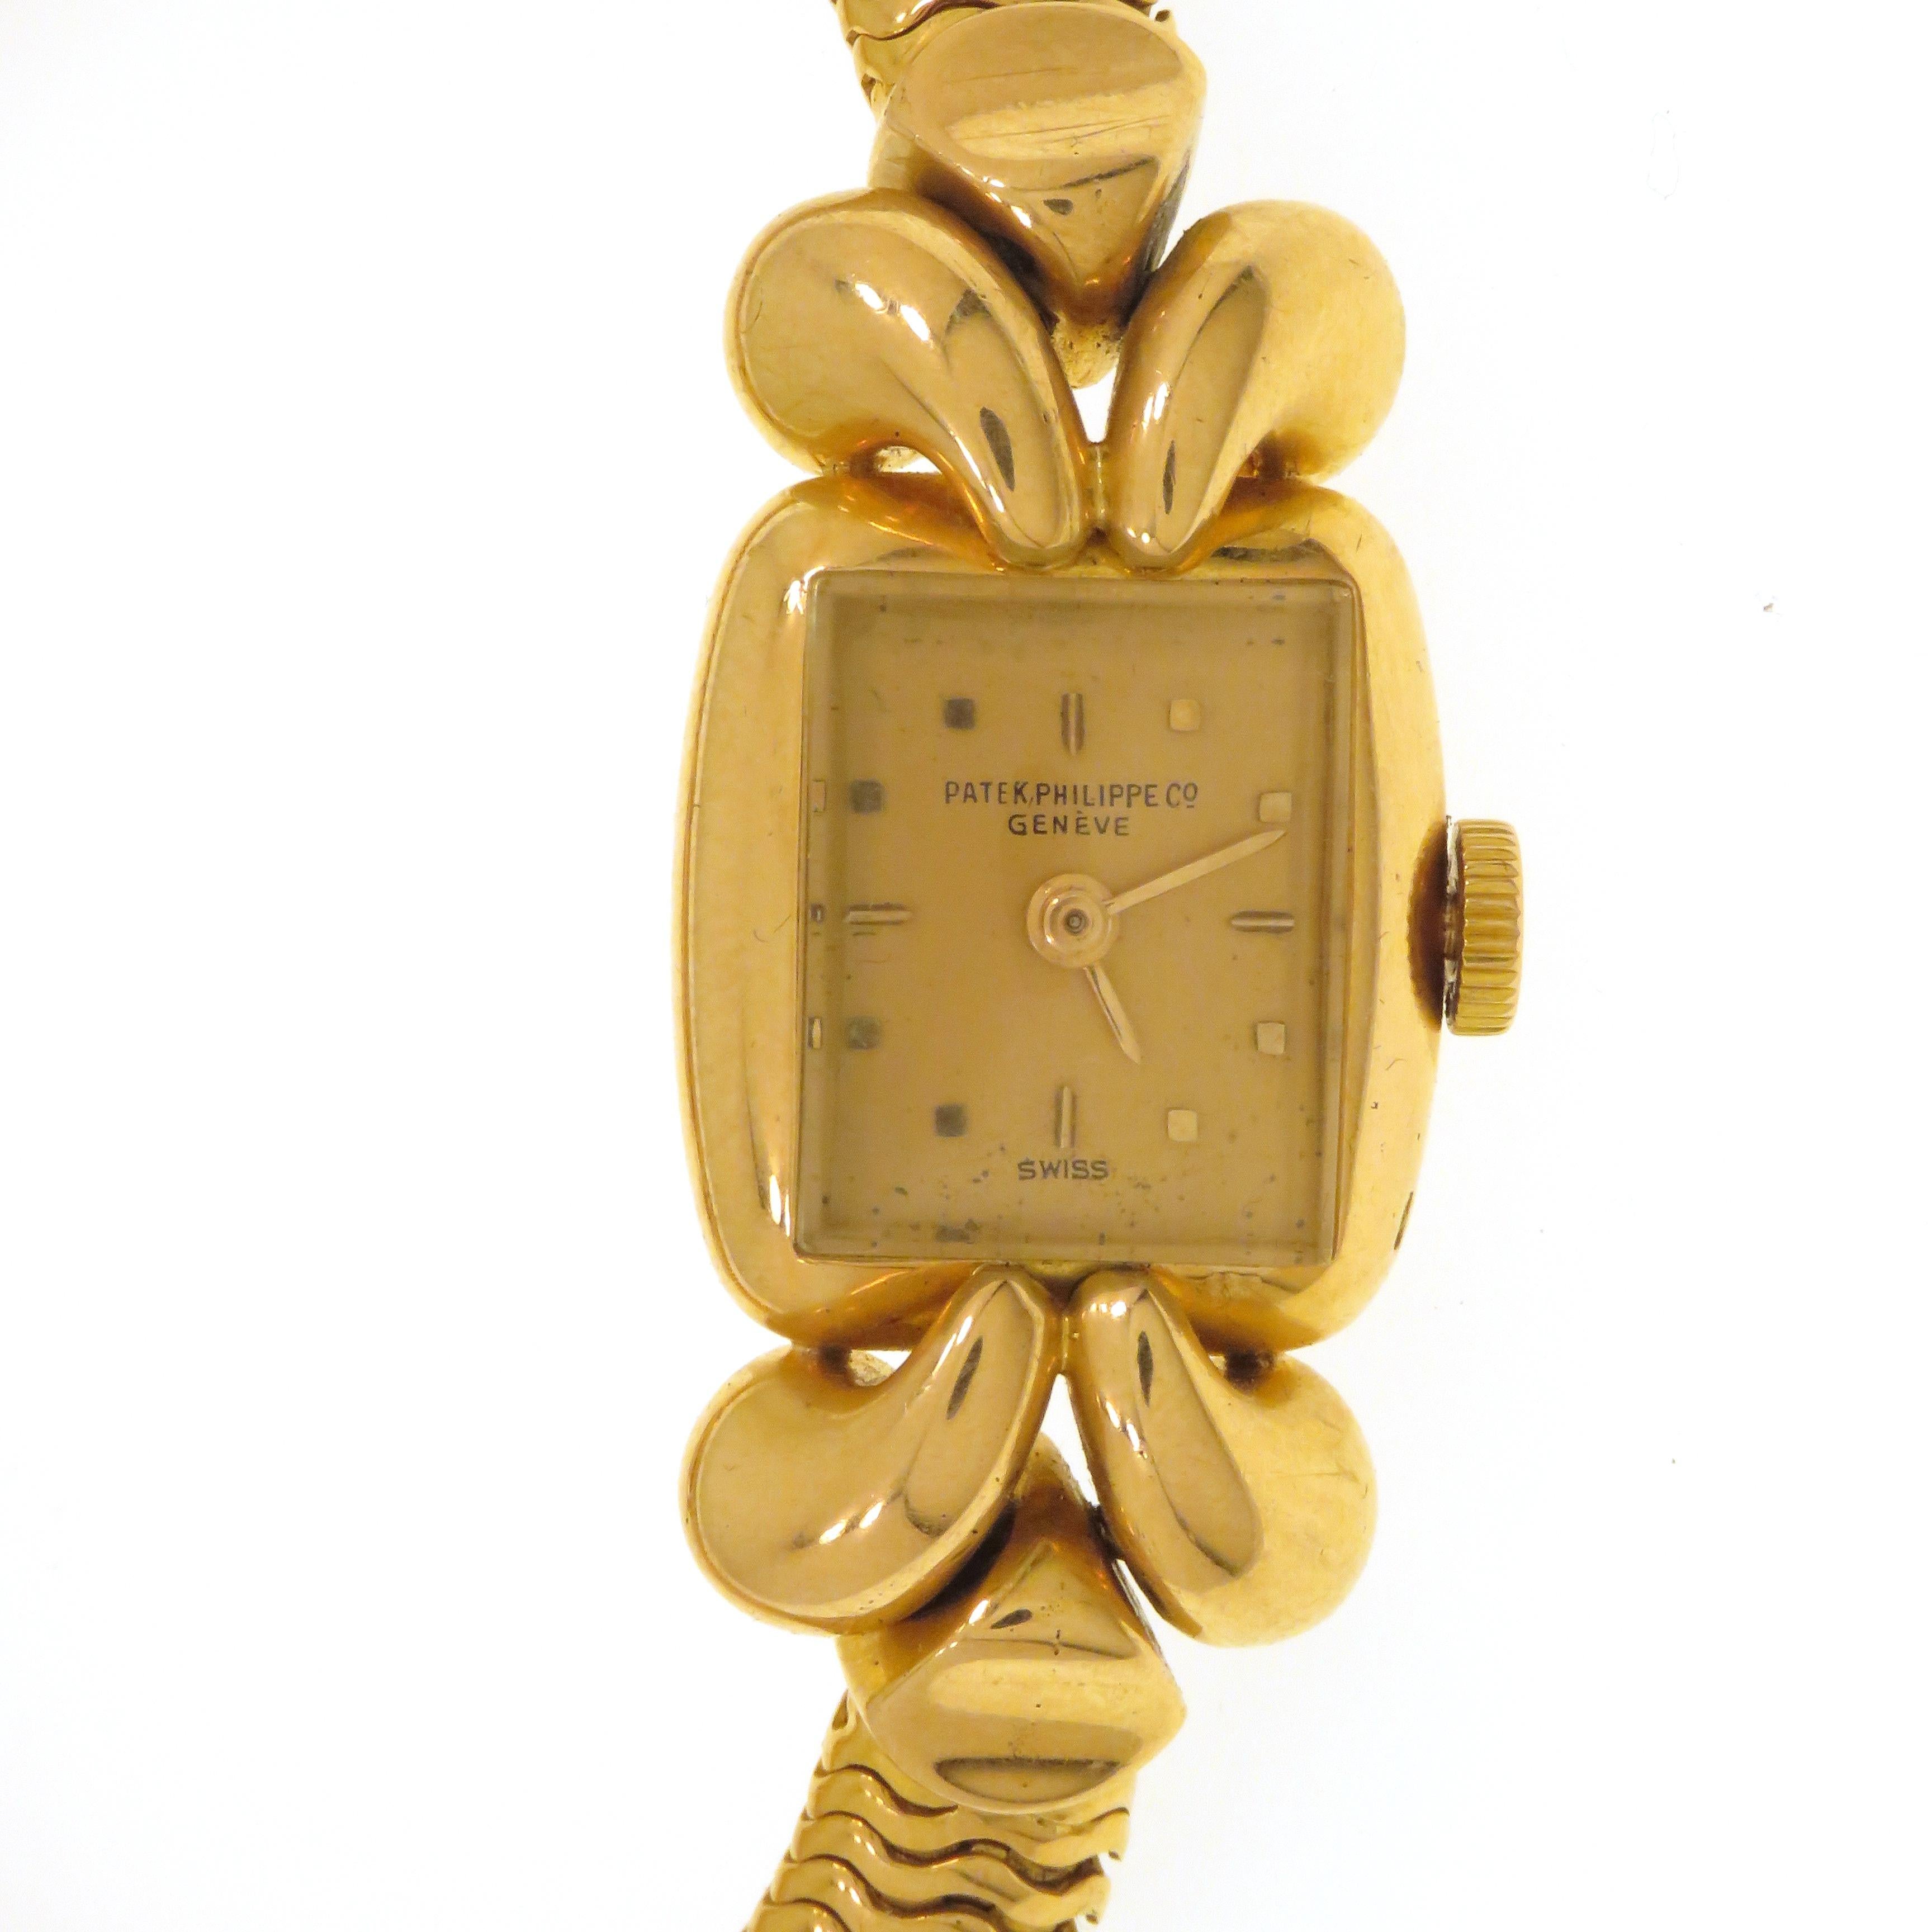 Rare montre-bracelet de dame Patek Philippe des années 1940 à remontage manuel sur bracelet tube en or rose 18 carats. Boîtier et bracelet en or massif. Le boîtier mesure 17x19 mm, le bracelet tube a un diamètre de 7 mm. La montre est en bon état de